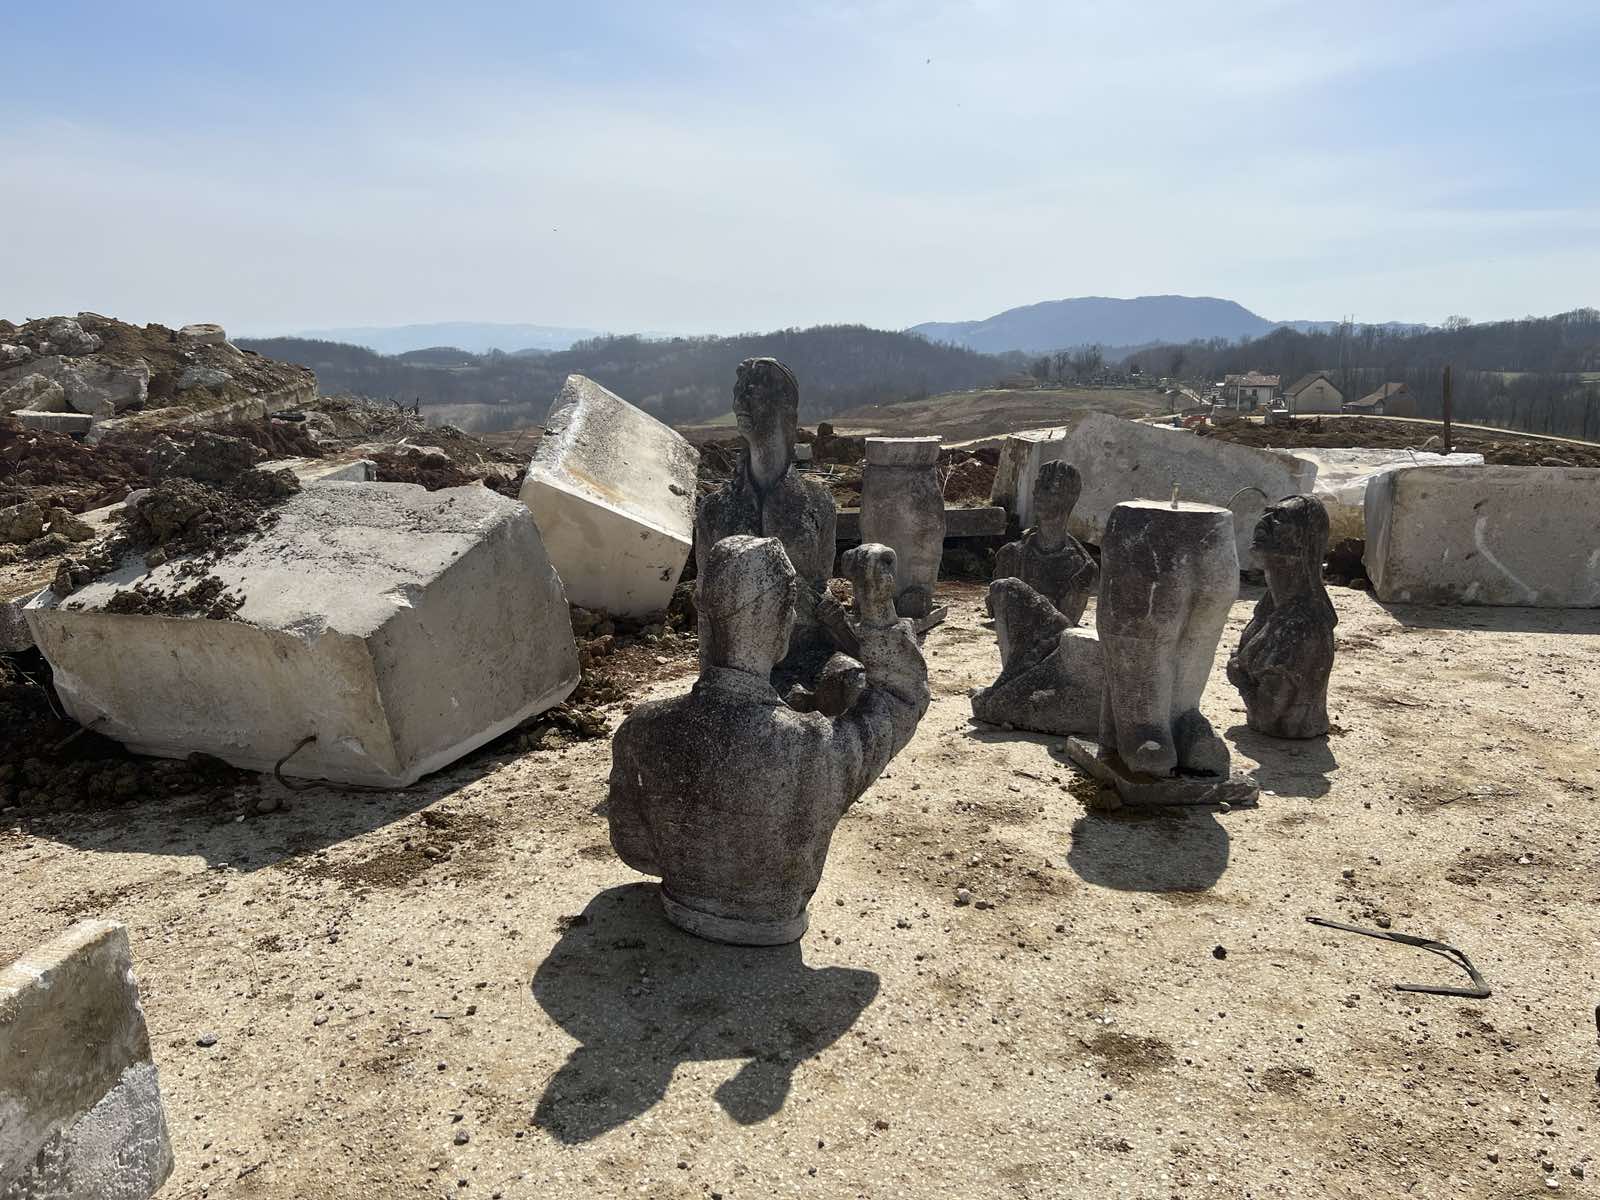 Srušen spomenik u Negrišorima: Meštani ogorčeni, Kinezima žao - obećavaju da će platiti obnovu (FOTO)